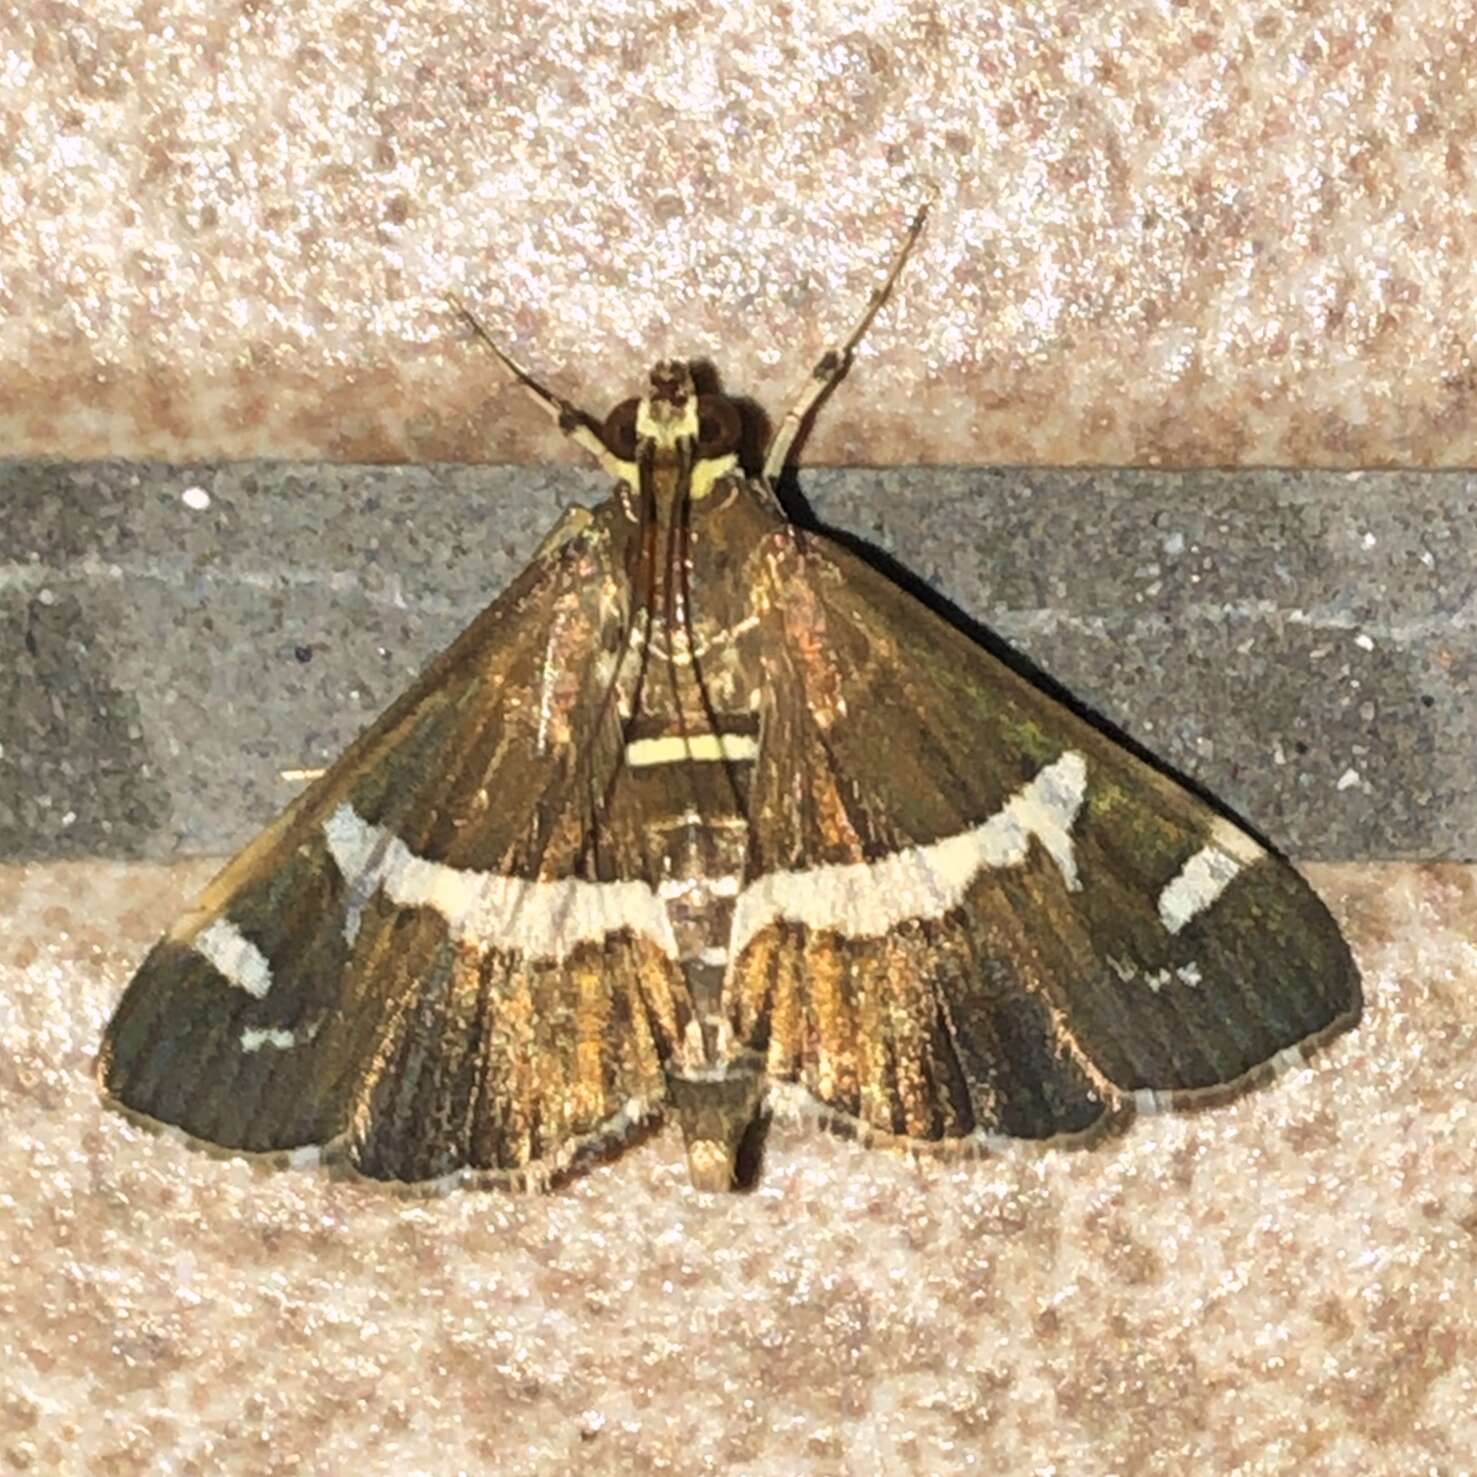 Image of Beet webworm moth